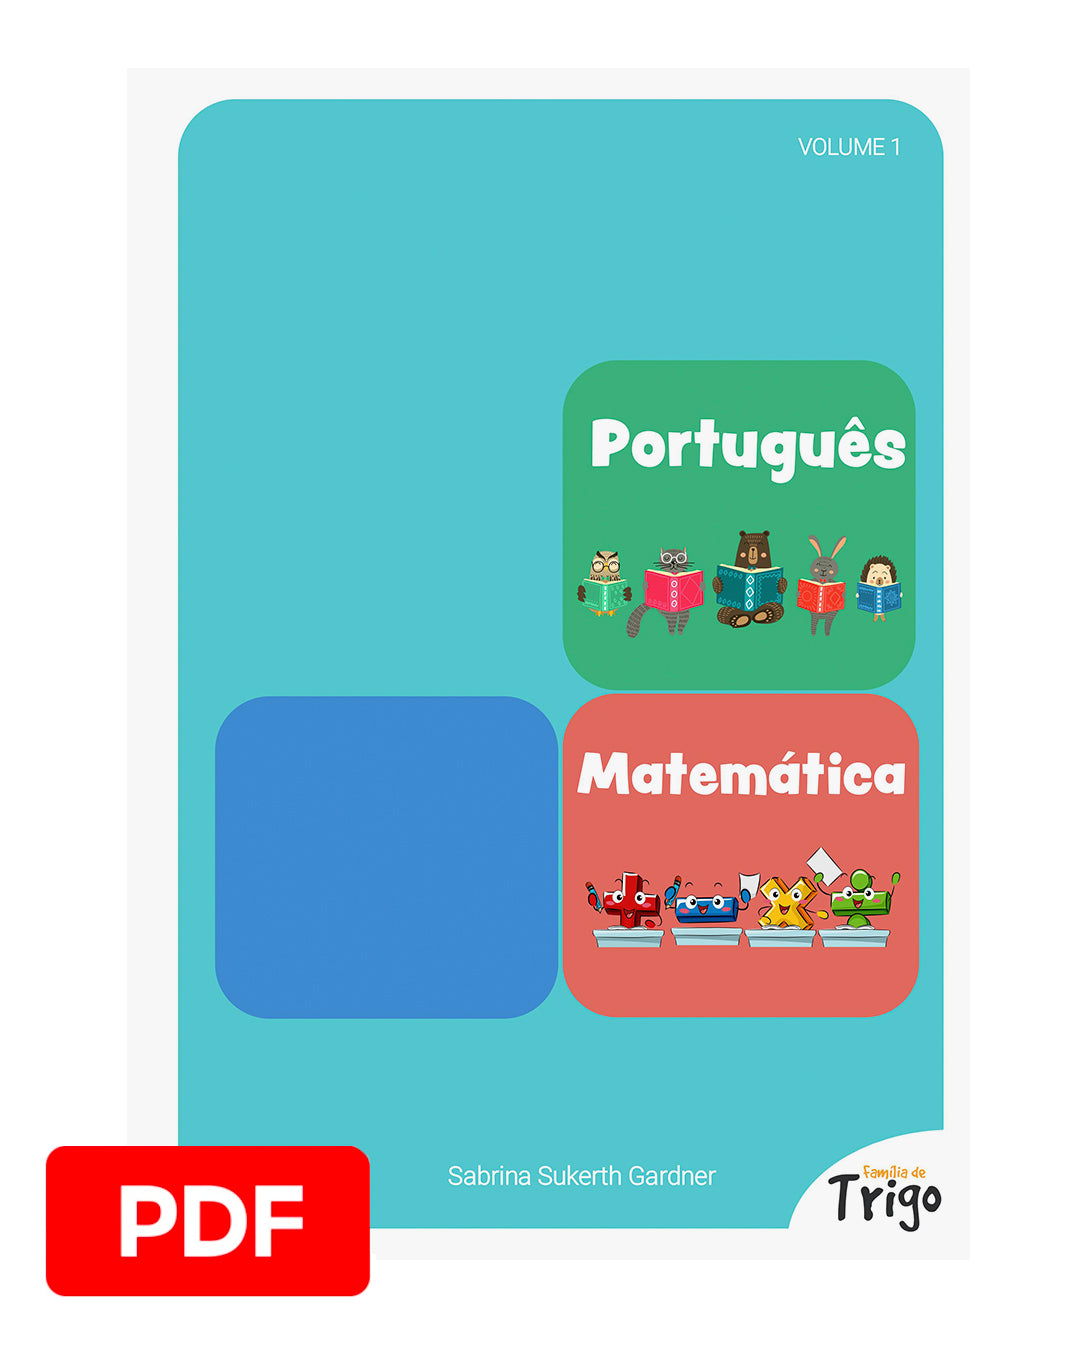 Apostila 3° Ano - Jogos Matemáticos em PDF — SÓ ESCOLA